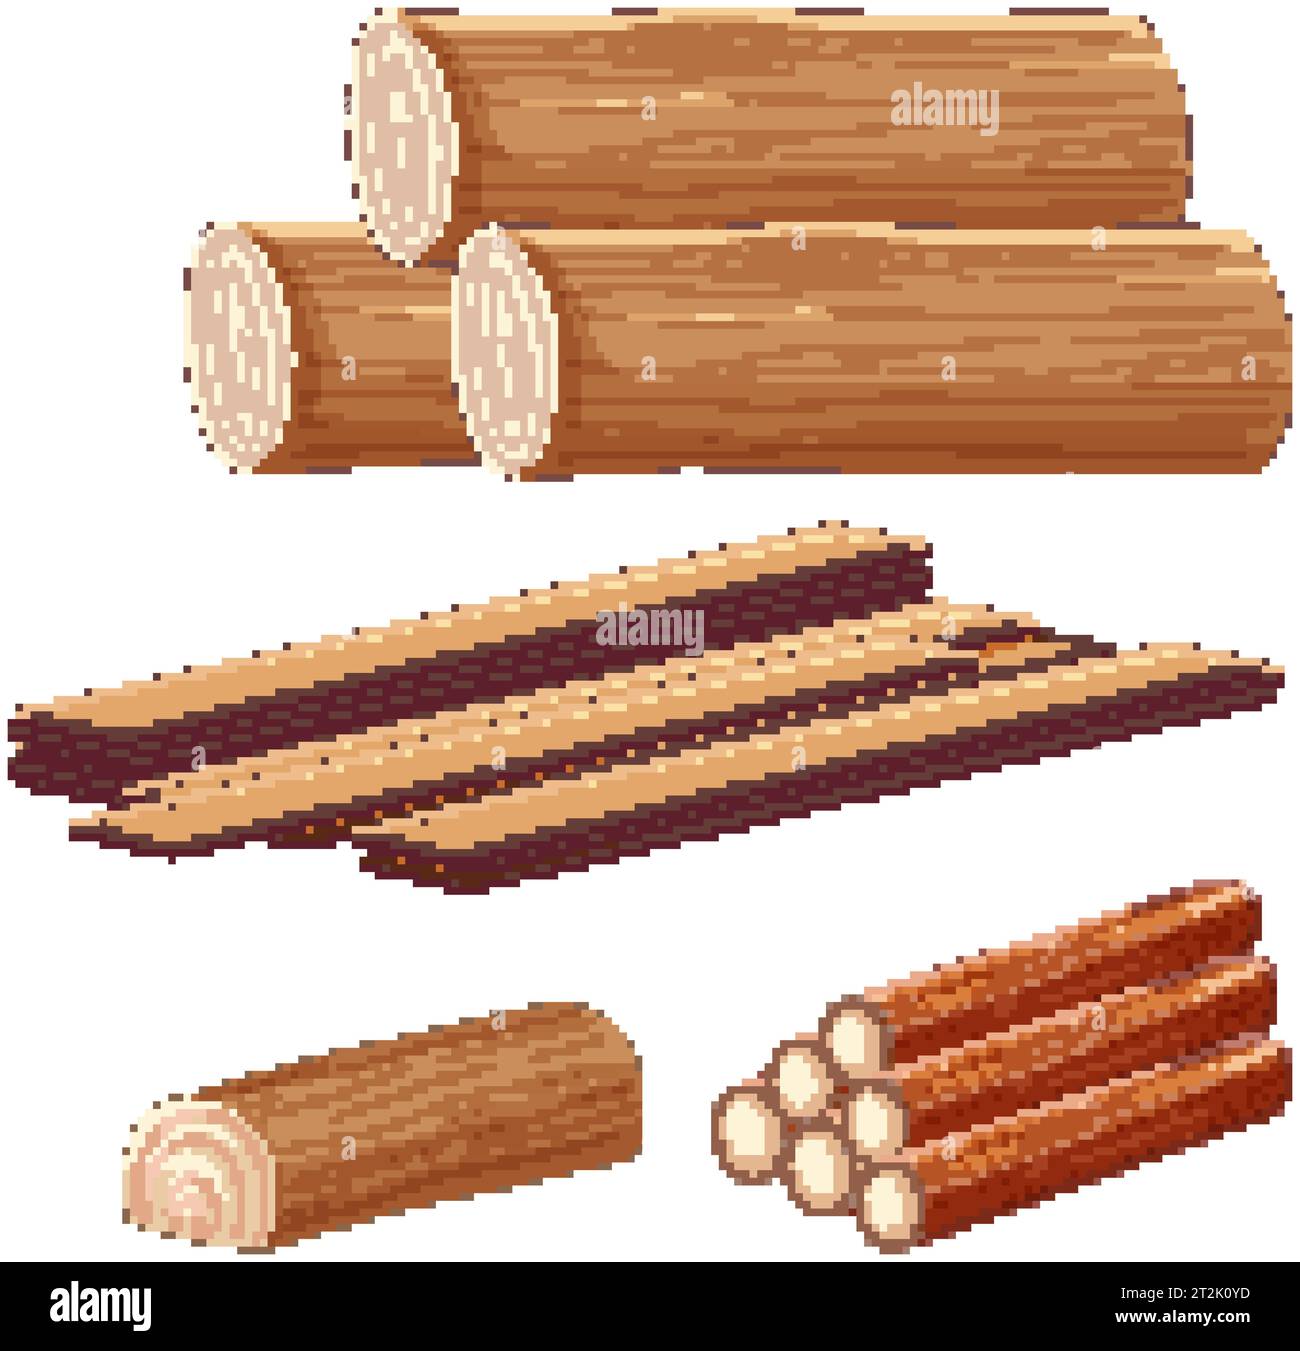 Eine Reihe von Holz- und Holzbaumaterialien im Vektor-Zeichentrickstil Stock Vektor